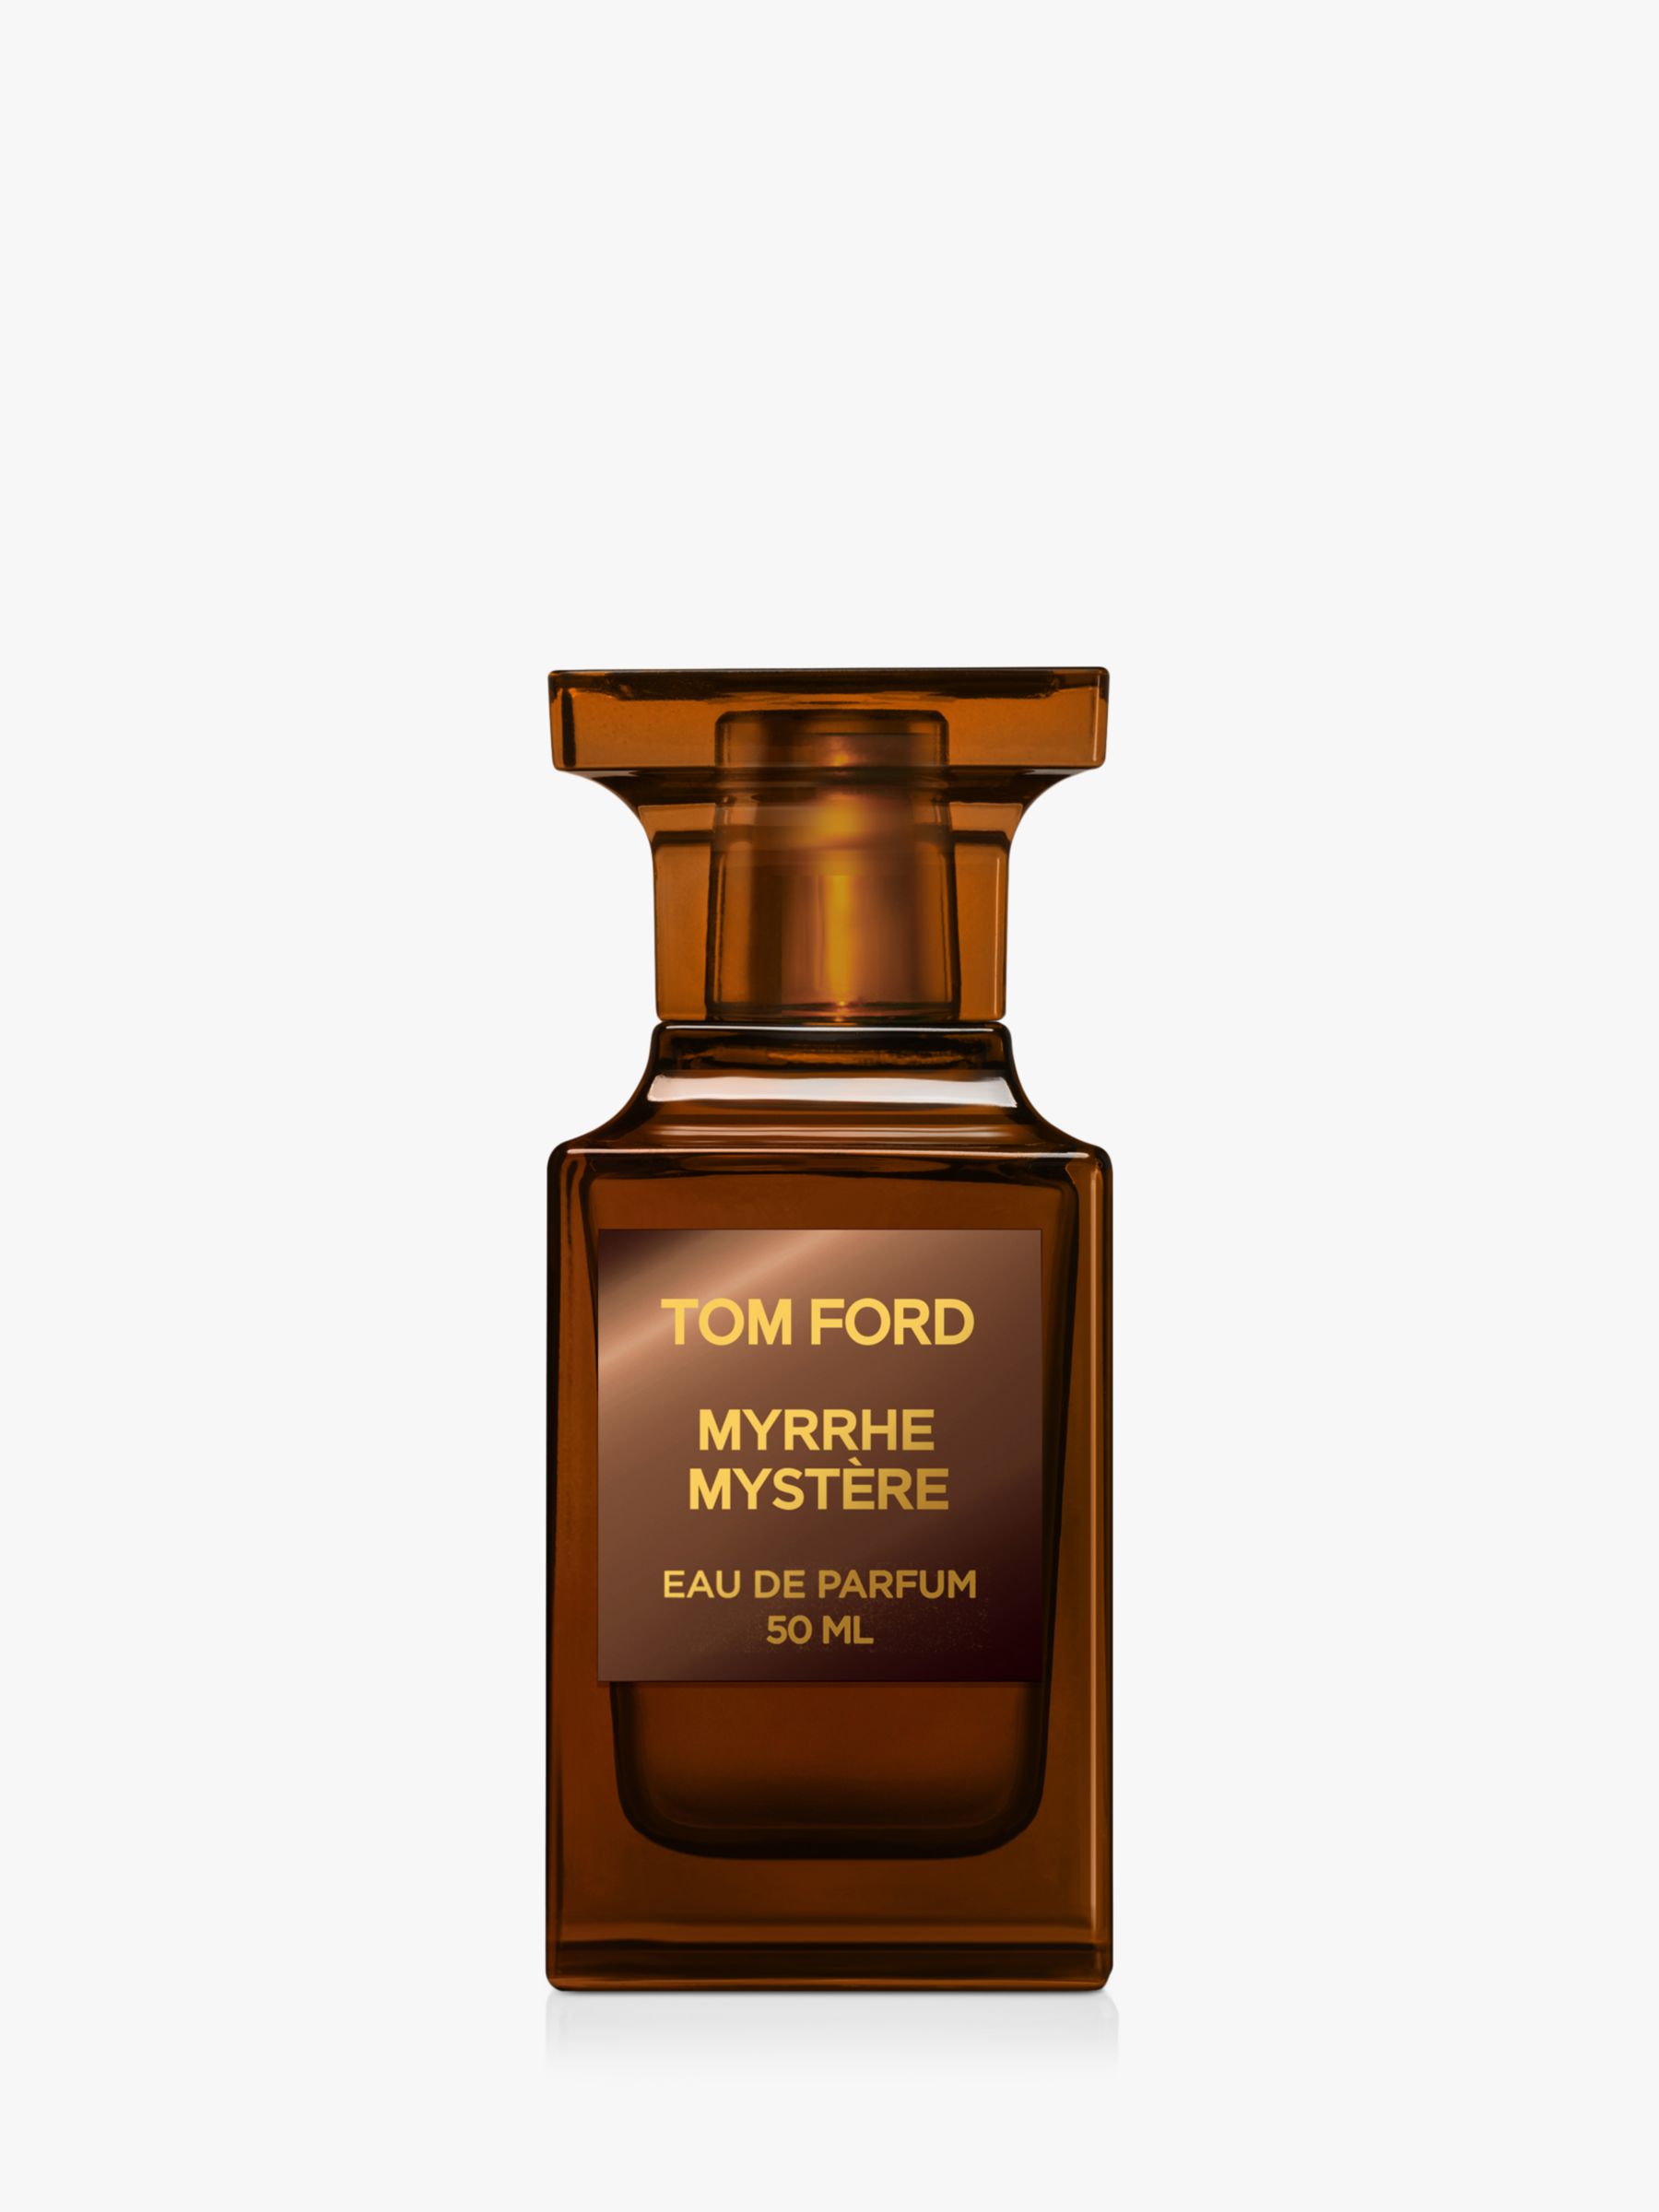 TOM FORD Privte Blend Myrrhe Mystère Eau de Parfum, 50ml at John Lewis ...